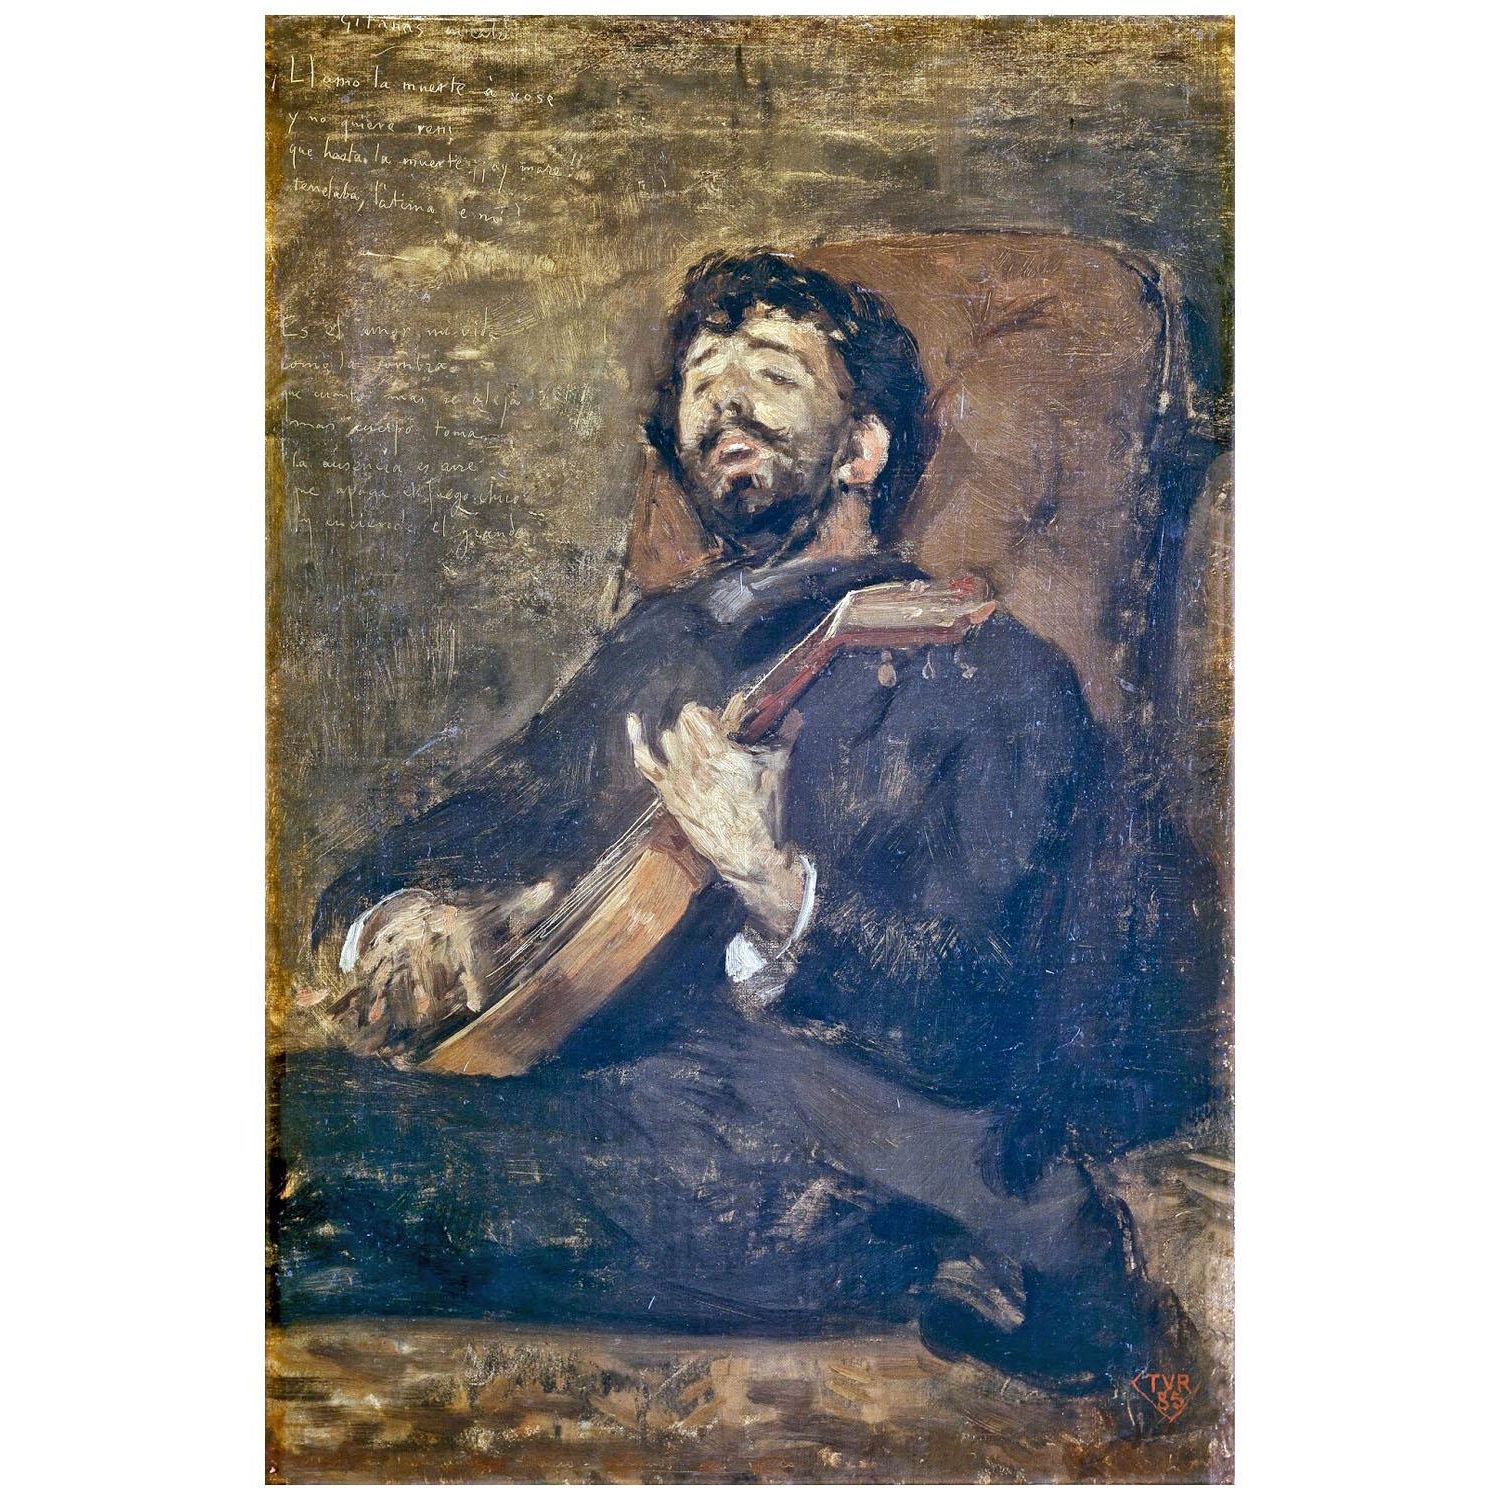 Theo van Rysselberghe. Dario de Regoyos avec la guitar. 1885. Museo del Prado Madrid